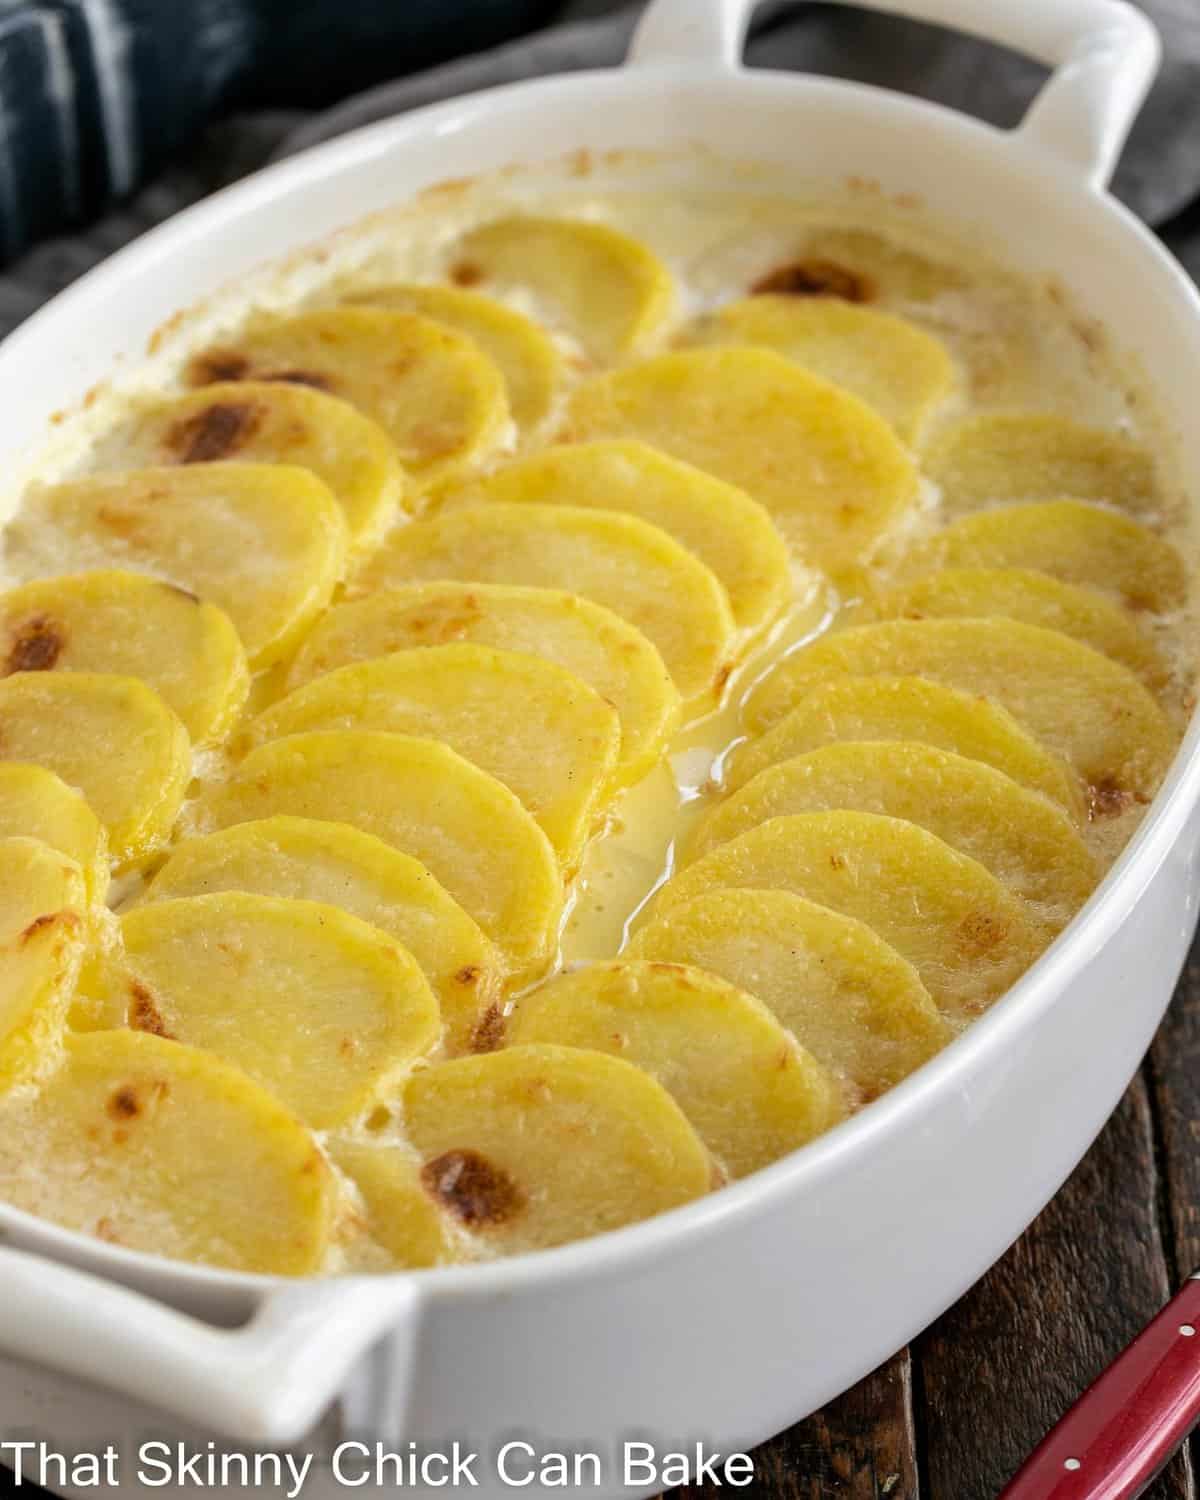 Oval casserole dish of scalloped potatoes